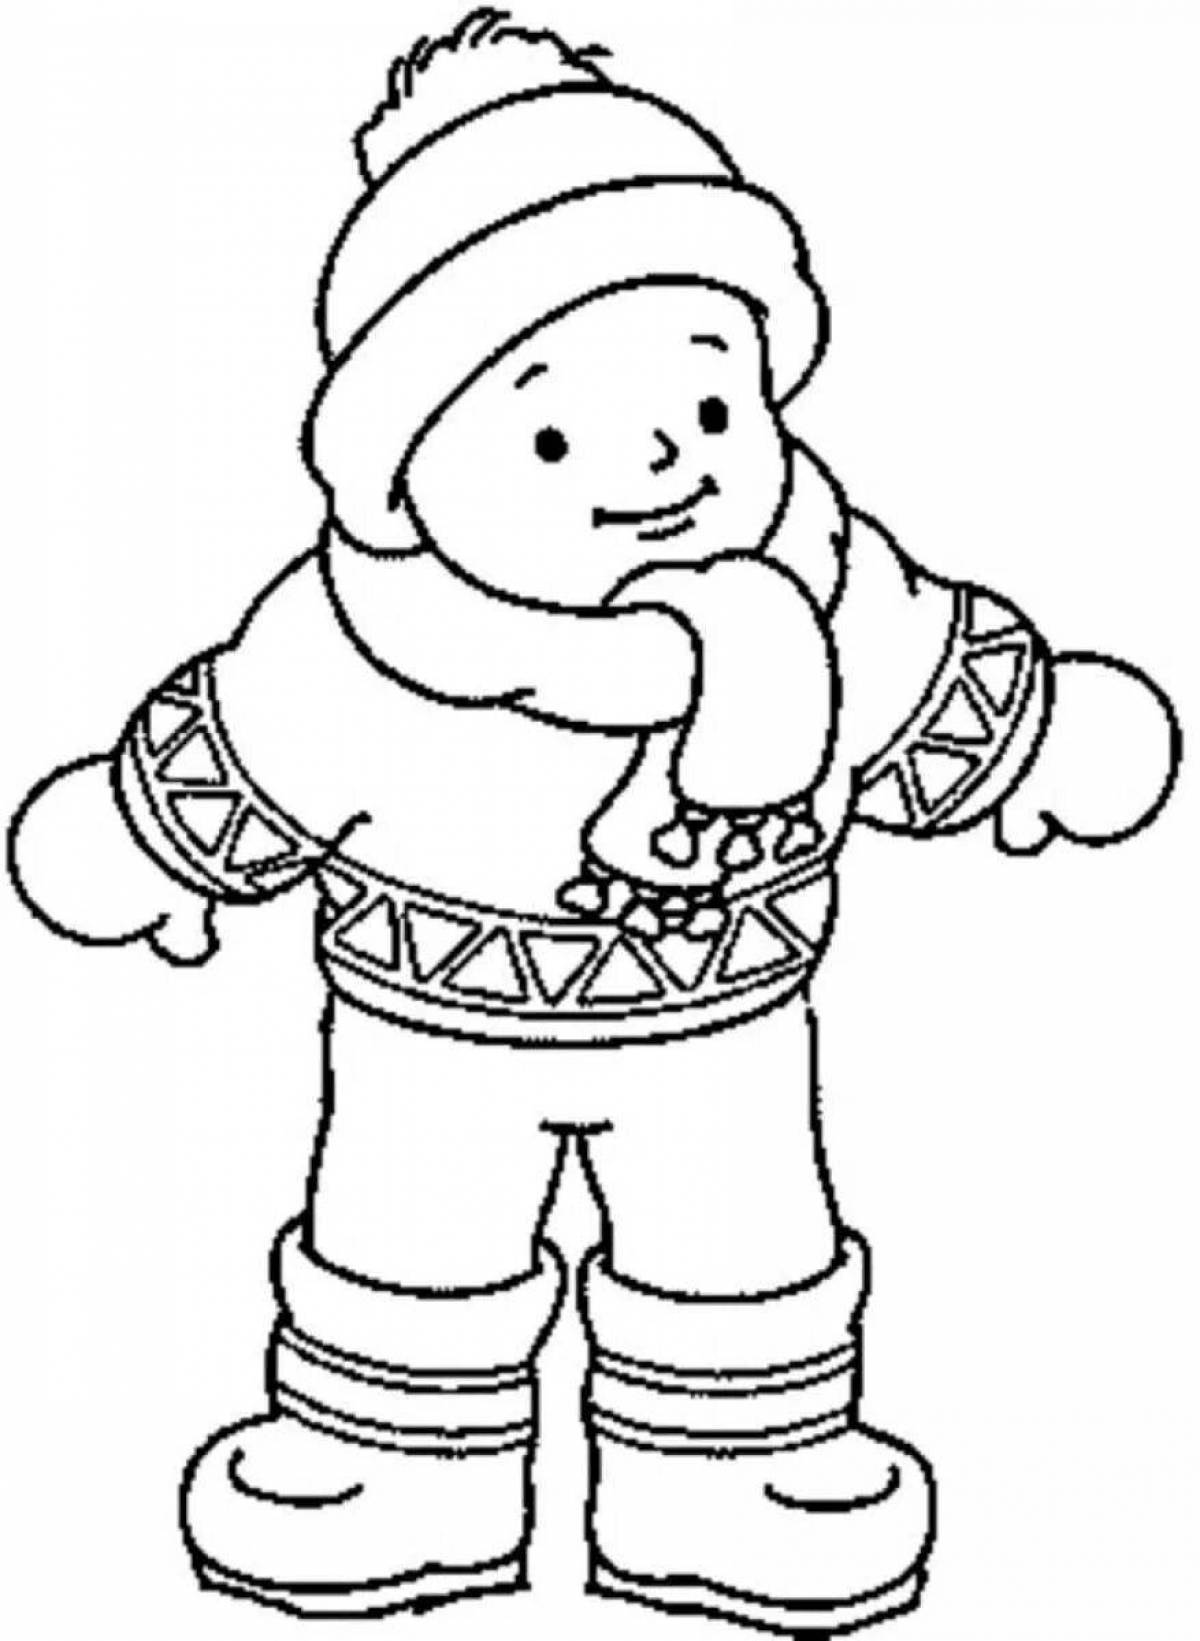 Живая кукла-раскраска в зимней одежде